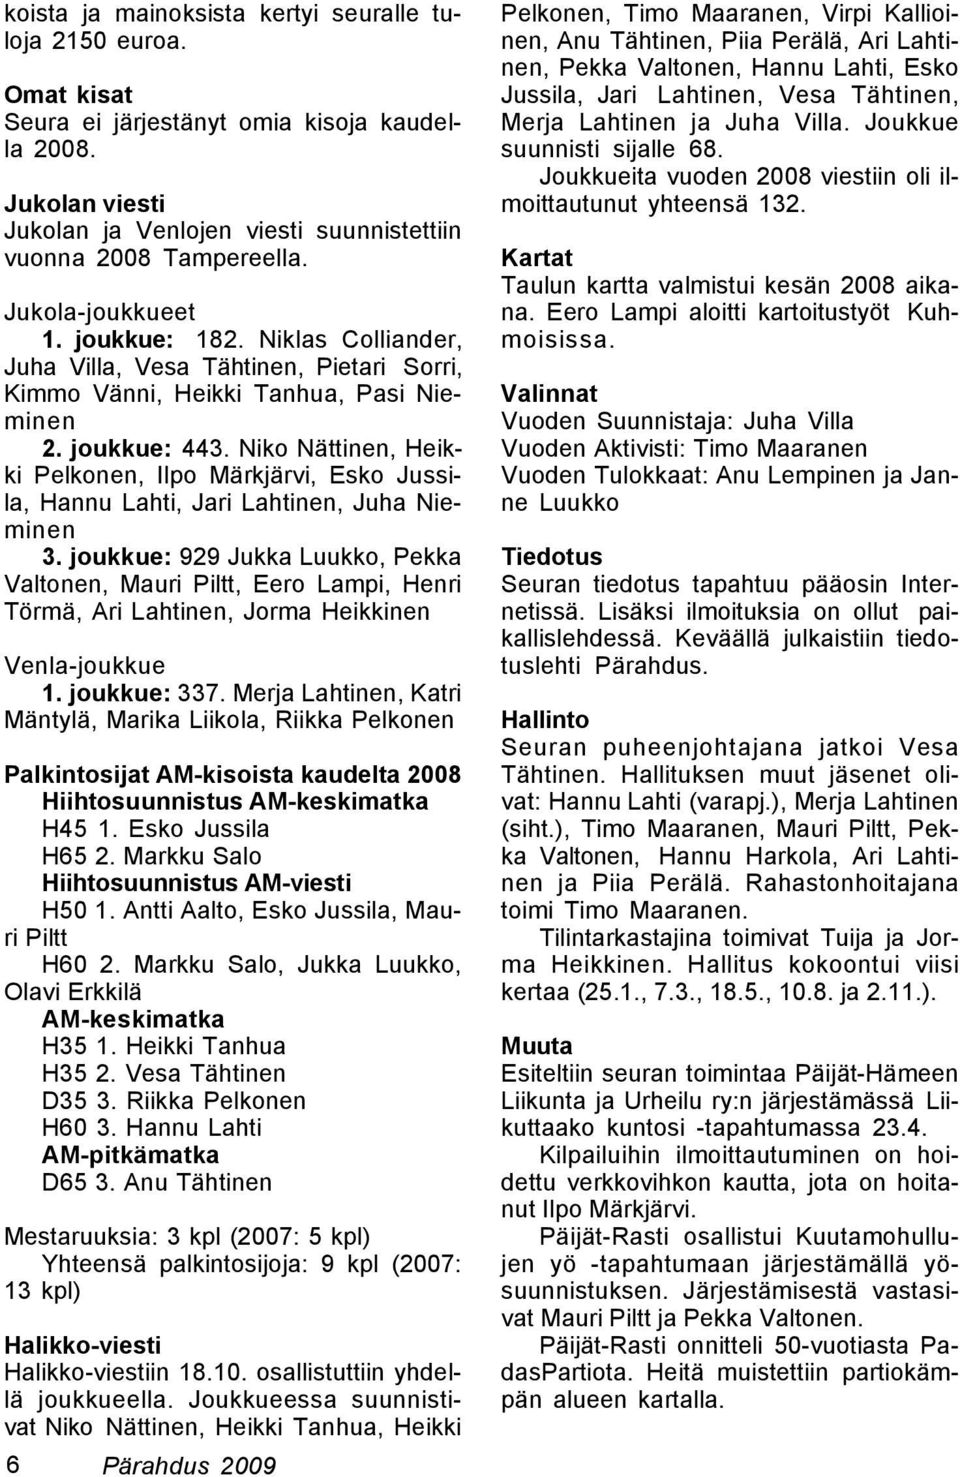 Niko Nättinen, Heikki Pelkonen, Ilpo Märkjärvi, Esko Jussila, Hannu Lahti, Jari Lahtinen, Juha Nieminen 3.